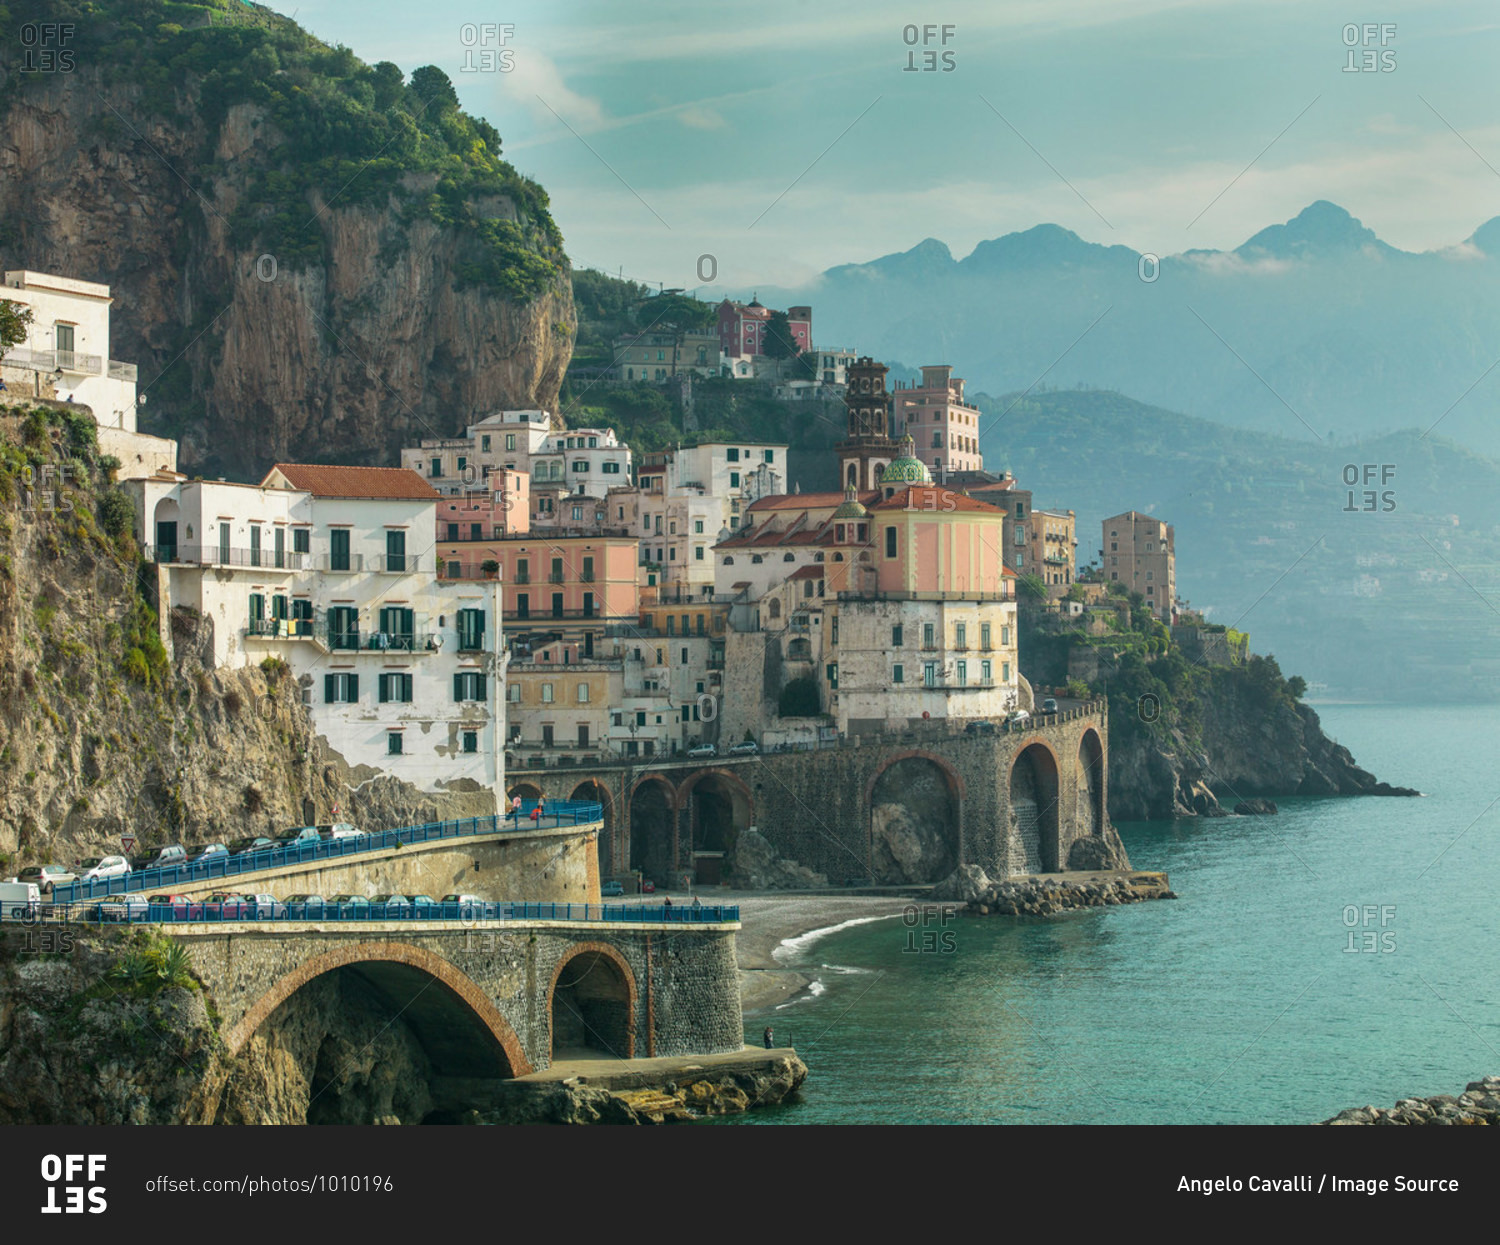 The village of Atrani, on the Amalfi Coast, Campania, Italy